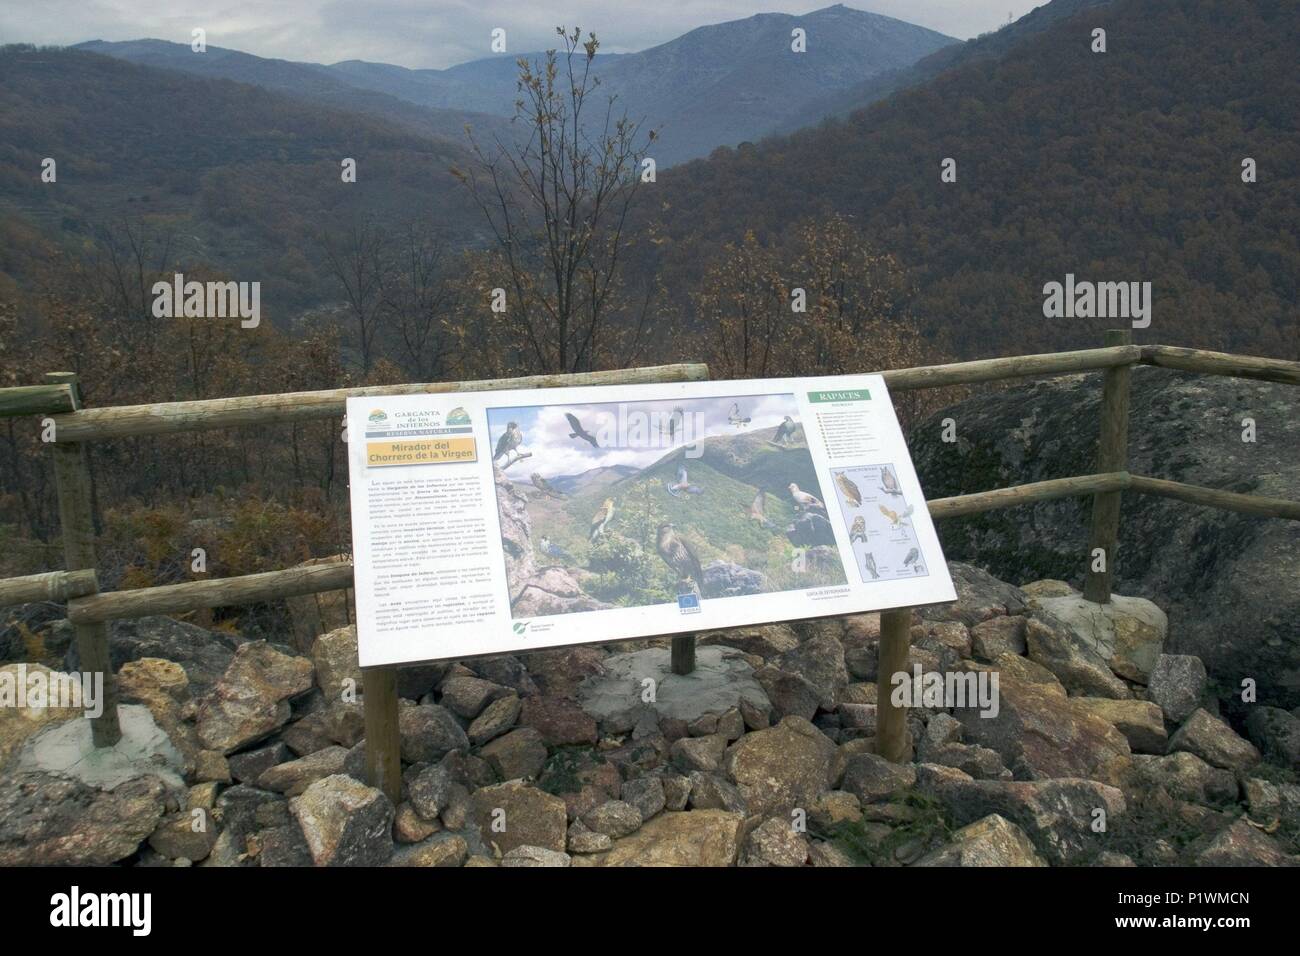 Valle del Jerte; Reserva Natural de 'La Garganta de los Infiernos'; mirador y mapa explicativo. Stock Photo